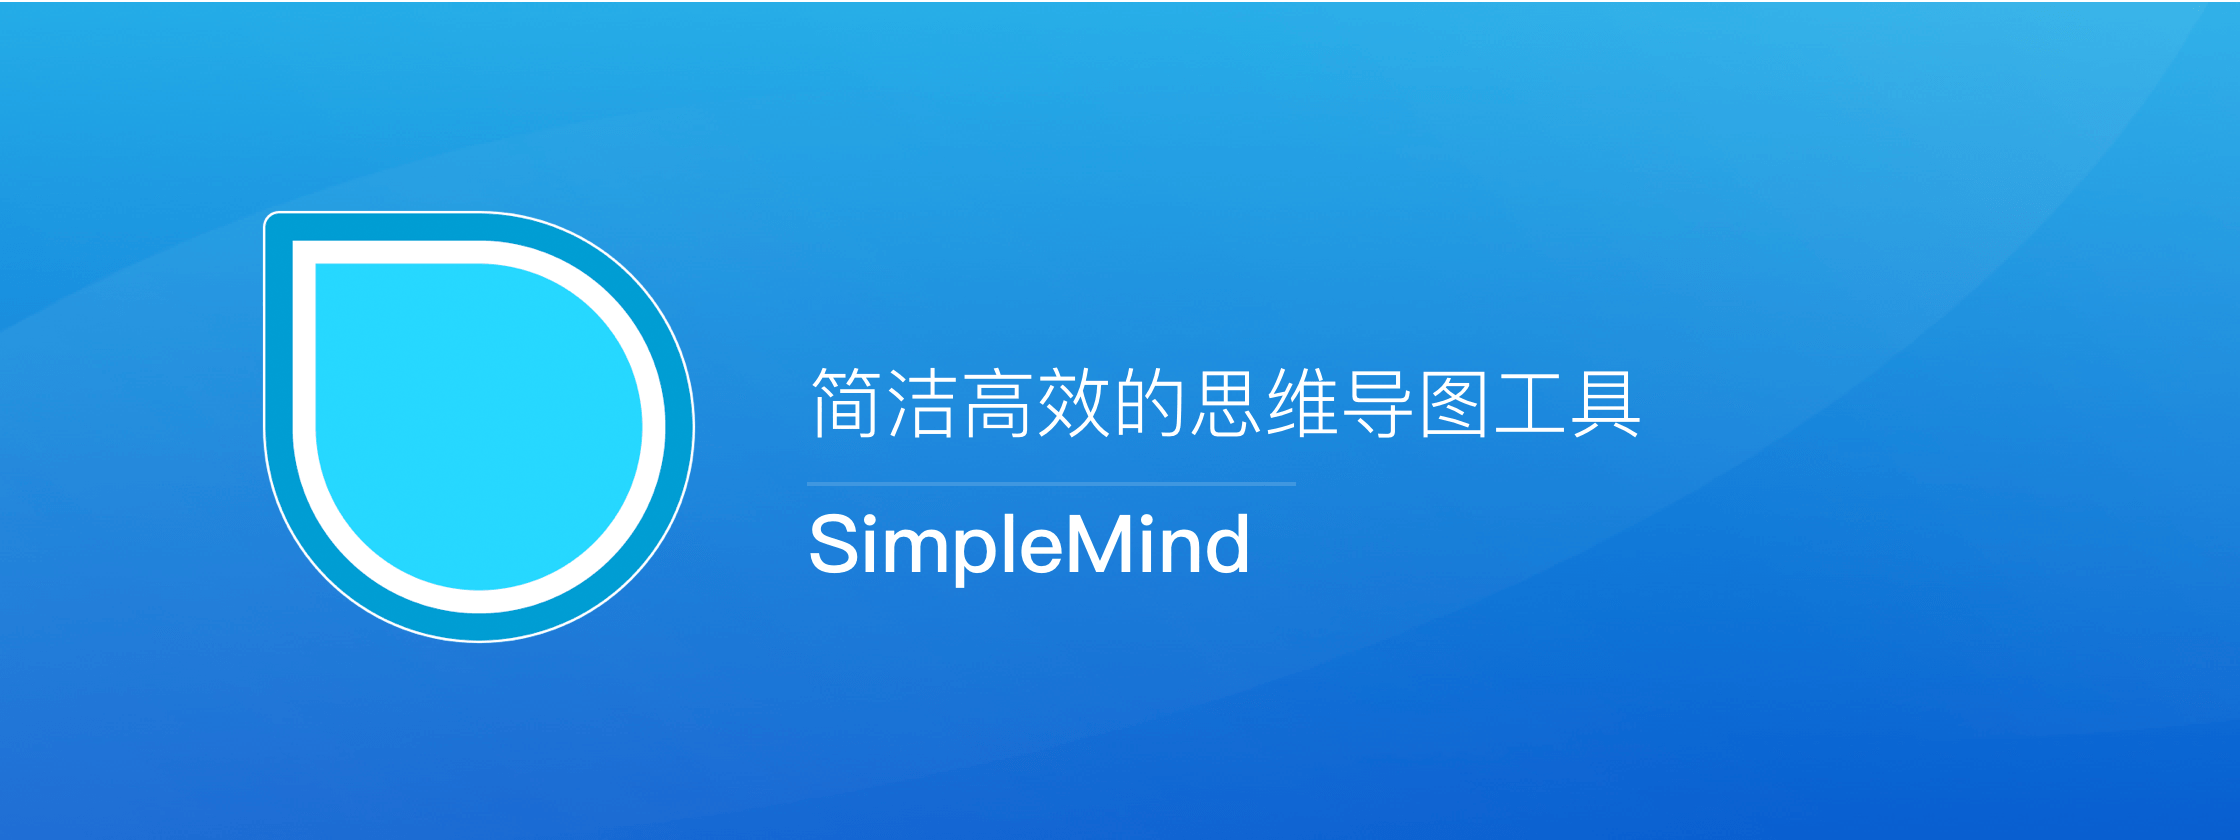 SimpleMind – 简洁高效的思维导图工具